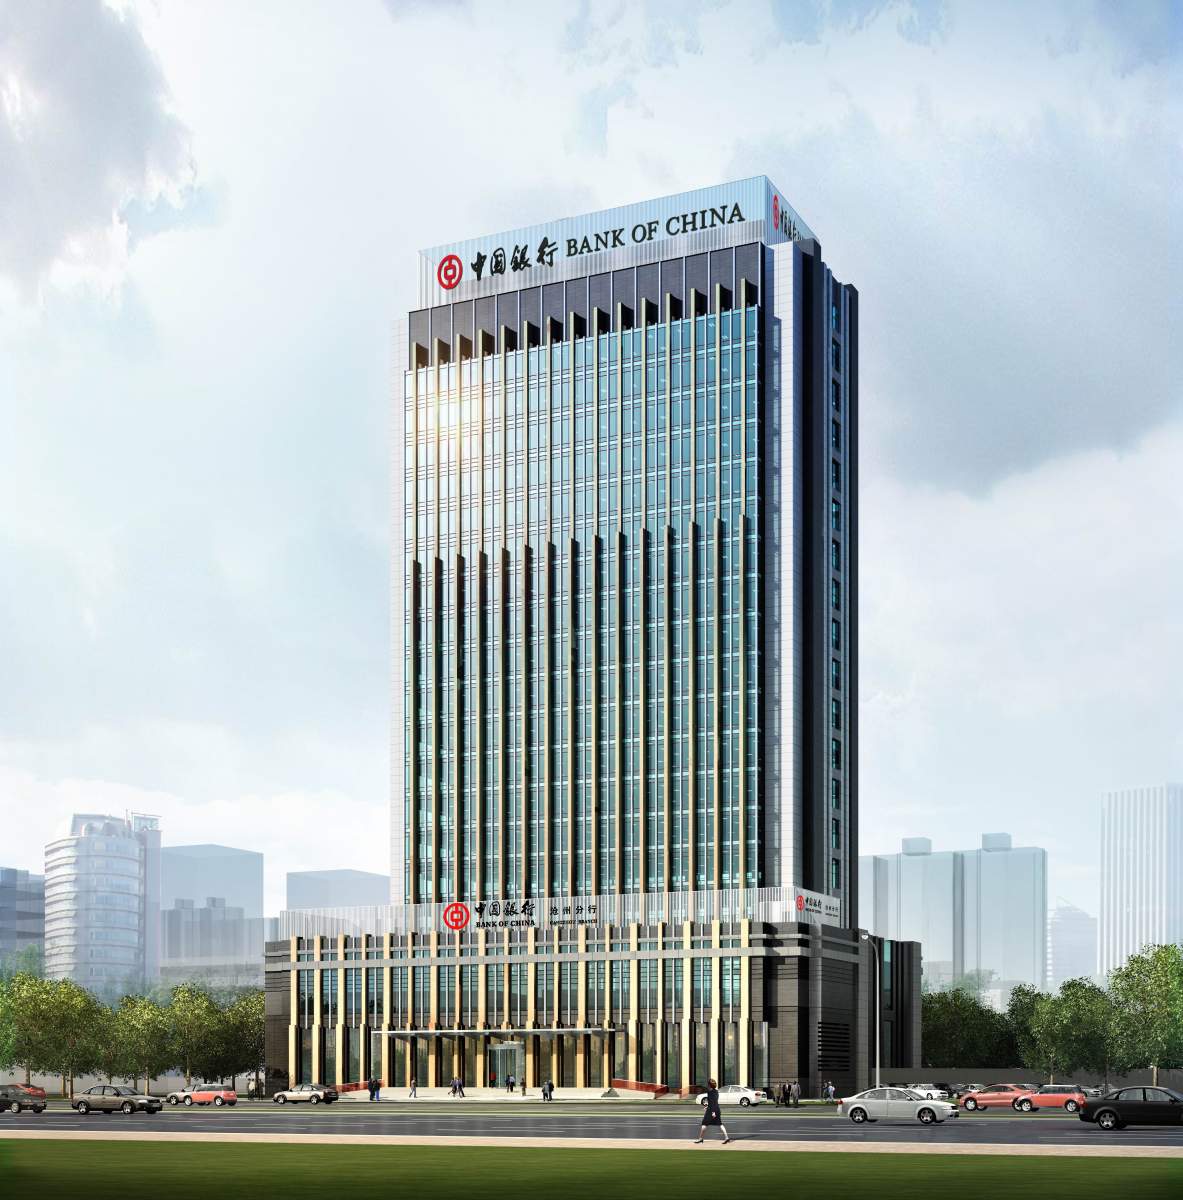 韩国IBK企业银行办公室设计装修 - 金融业 - HTM赫红建筑设计